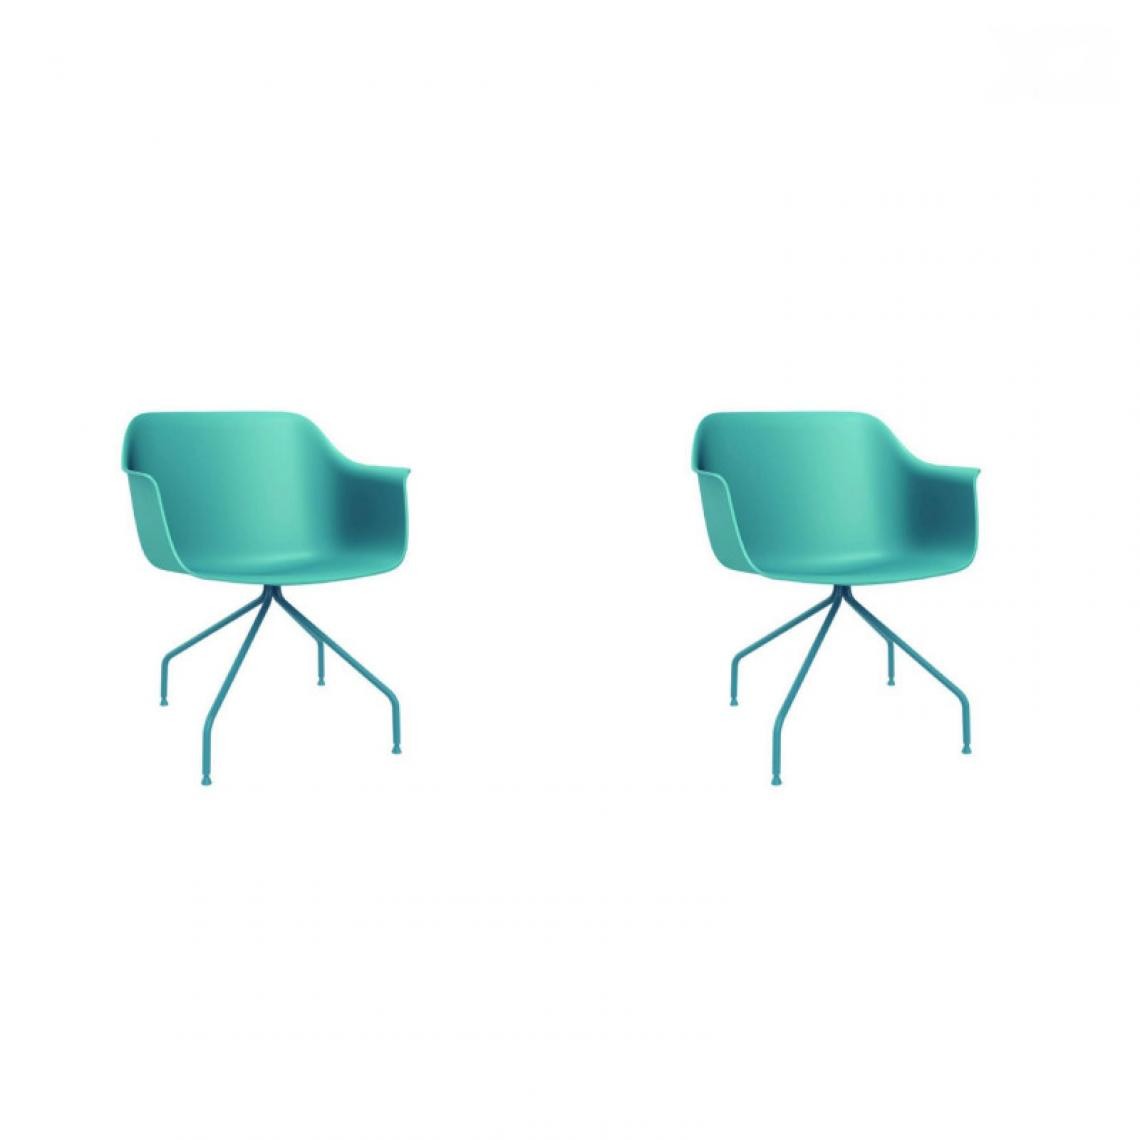 Resol - Set 2 Chaise Araignée - RESOL - Bleu RétroFibre de verre, Polypropylène, Acier peint - Chaises